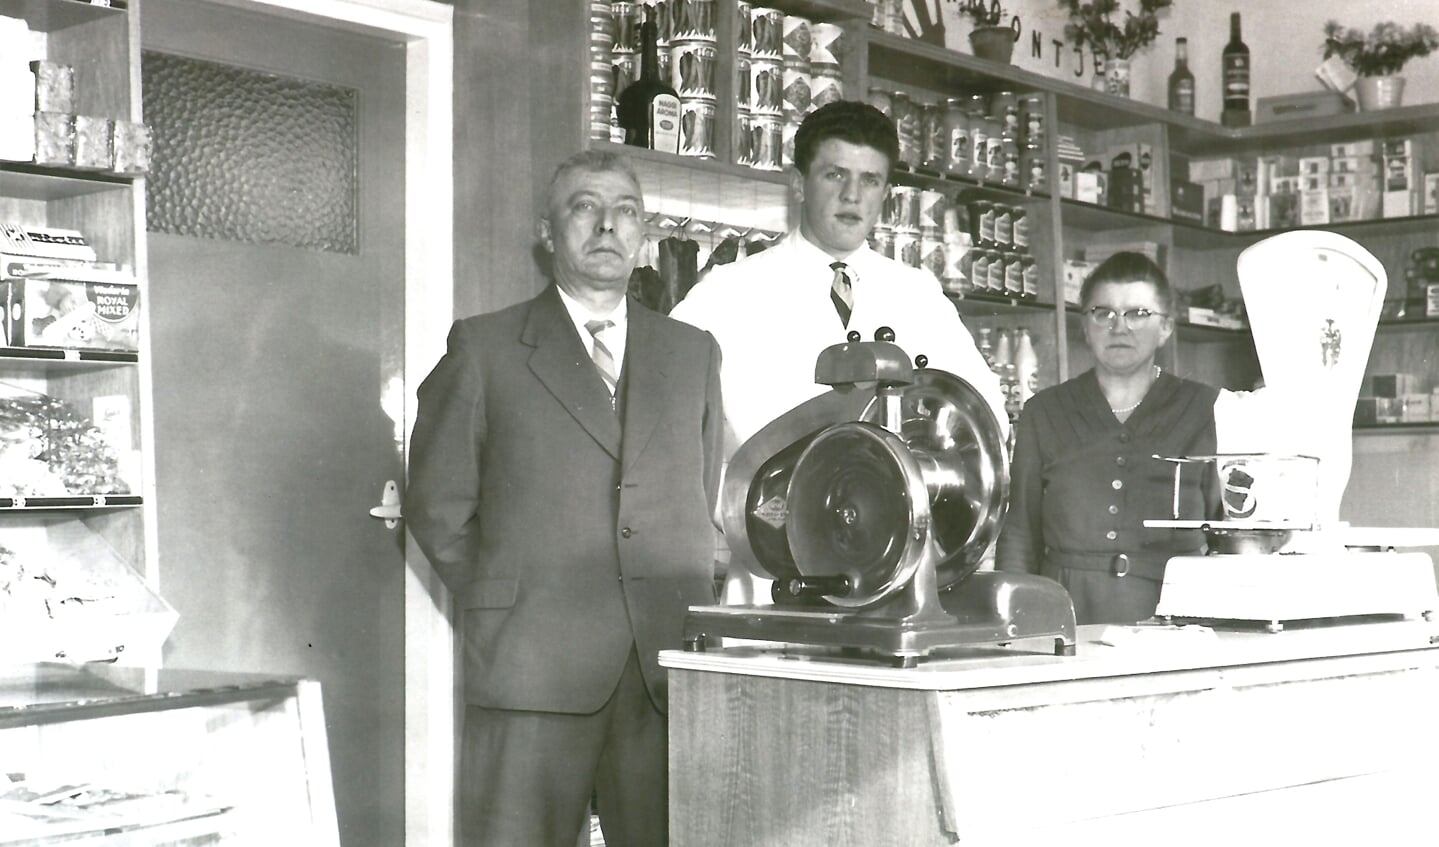 Jo had de winkel in 1959 overgenomen van zijn vader (v.l.n.r.: vader Toon, Jo en moeder Sien